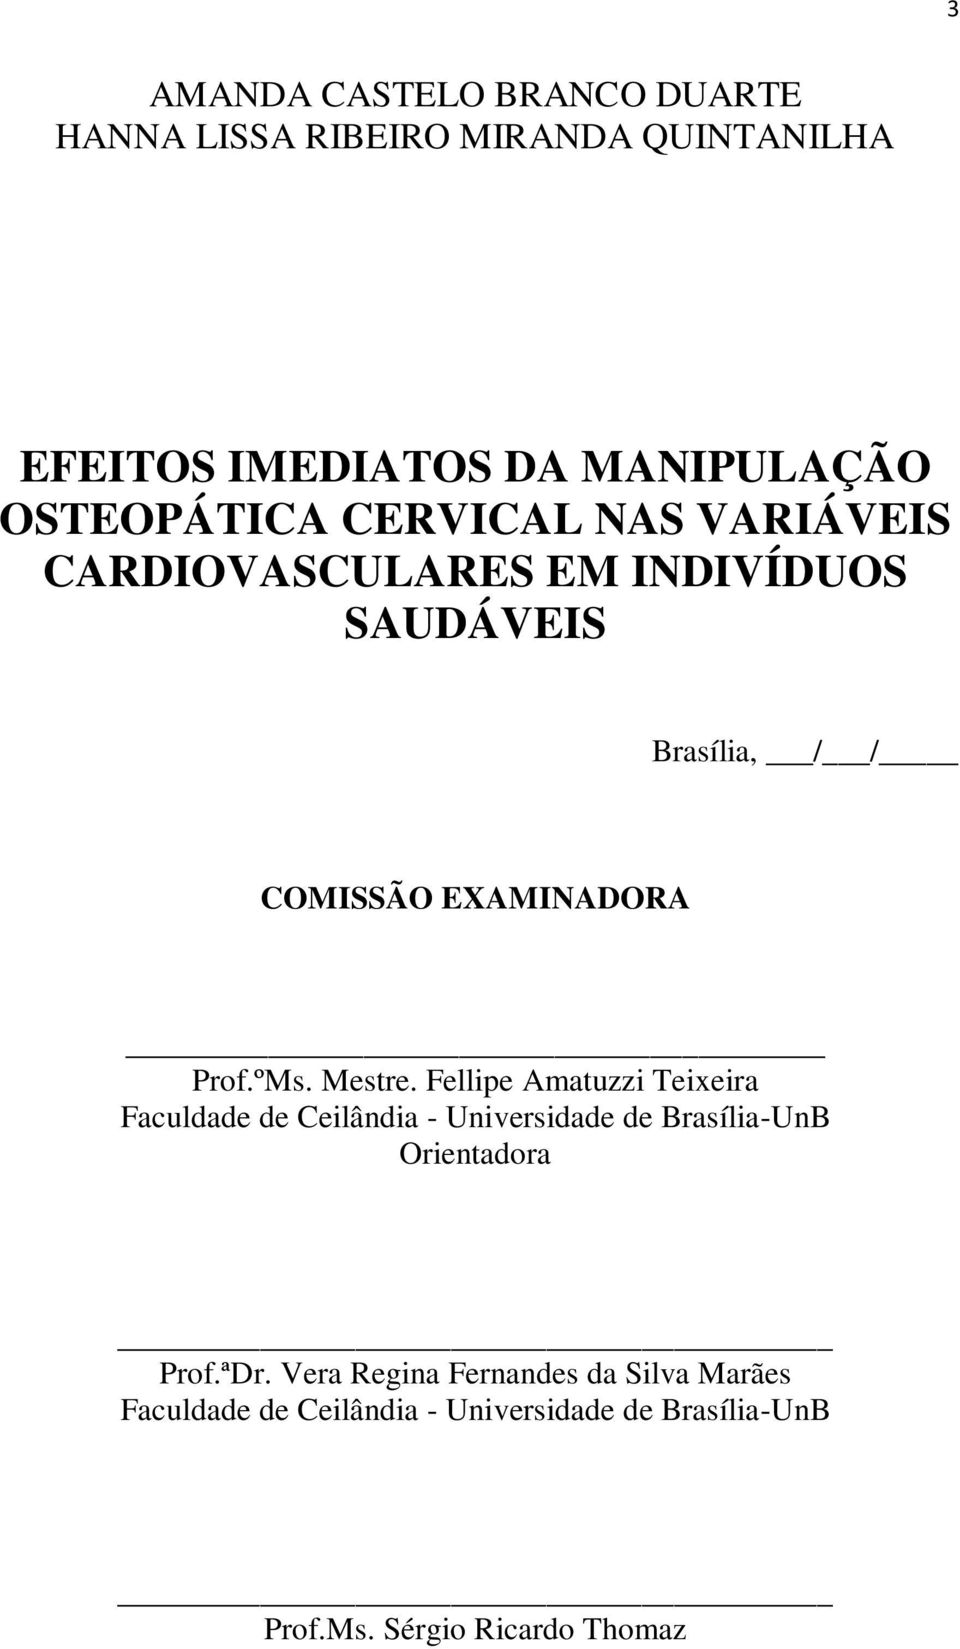 Prof.ºMs. Mestre. Fellipe Amatuzzi Teixeira Faculdade de Ceilândia - Universidade de Brasília-UnB Orientadora Prof.